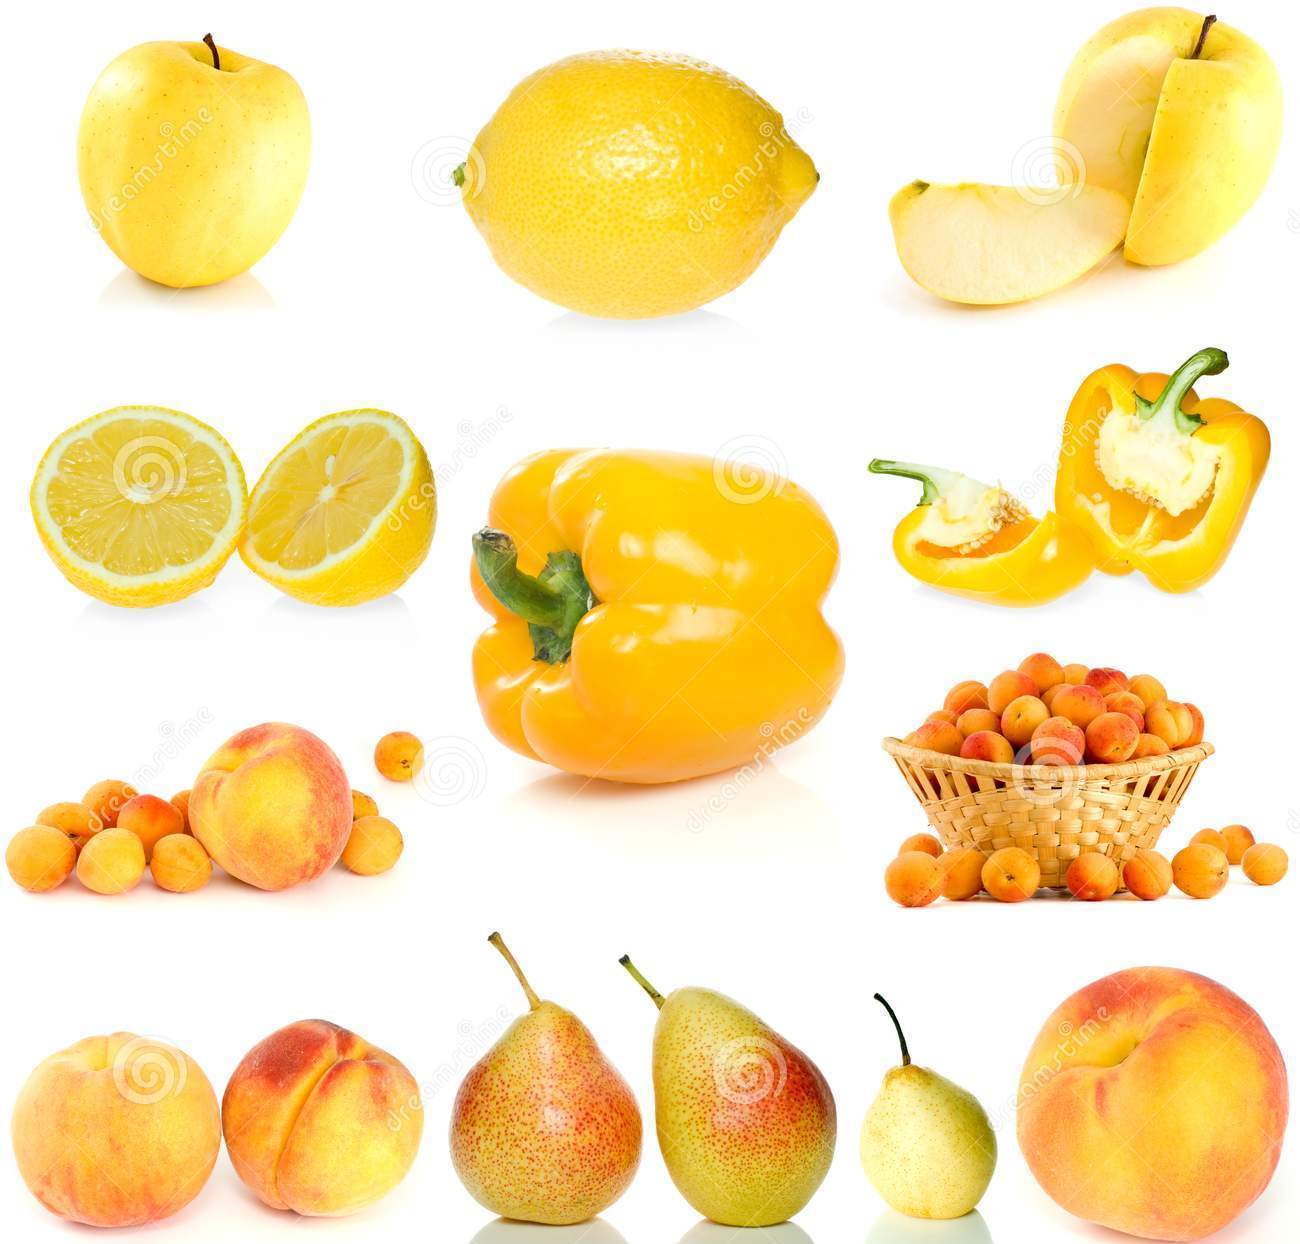 Żółte/pomarańczowe warzywa i owoce